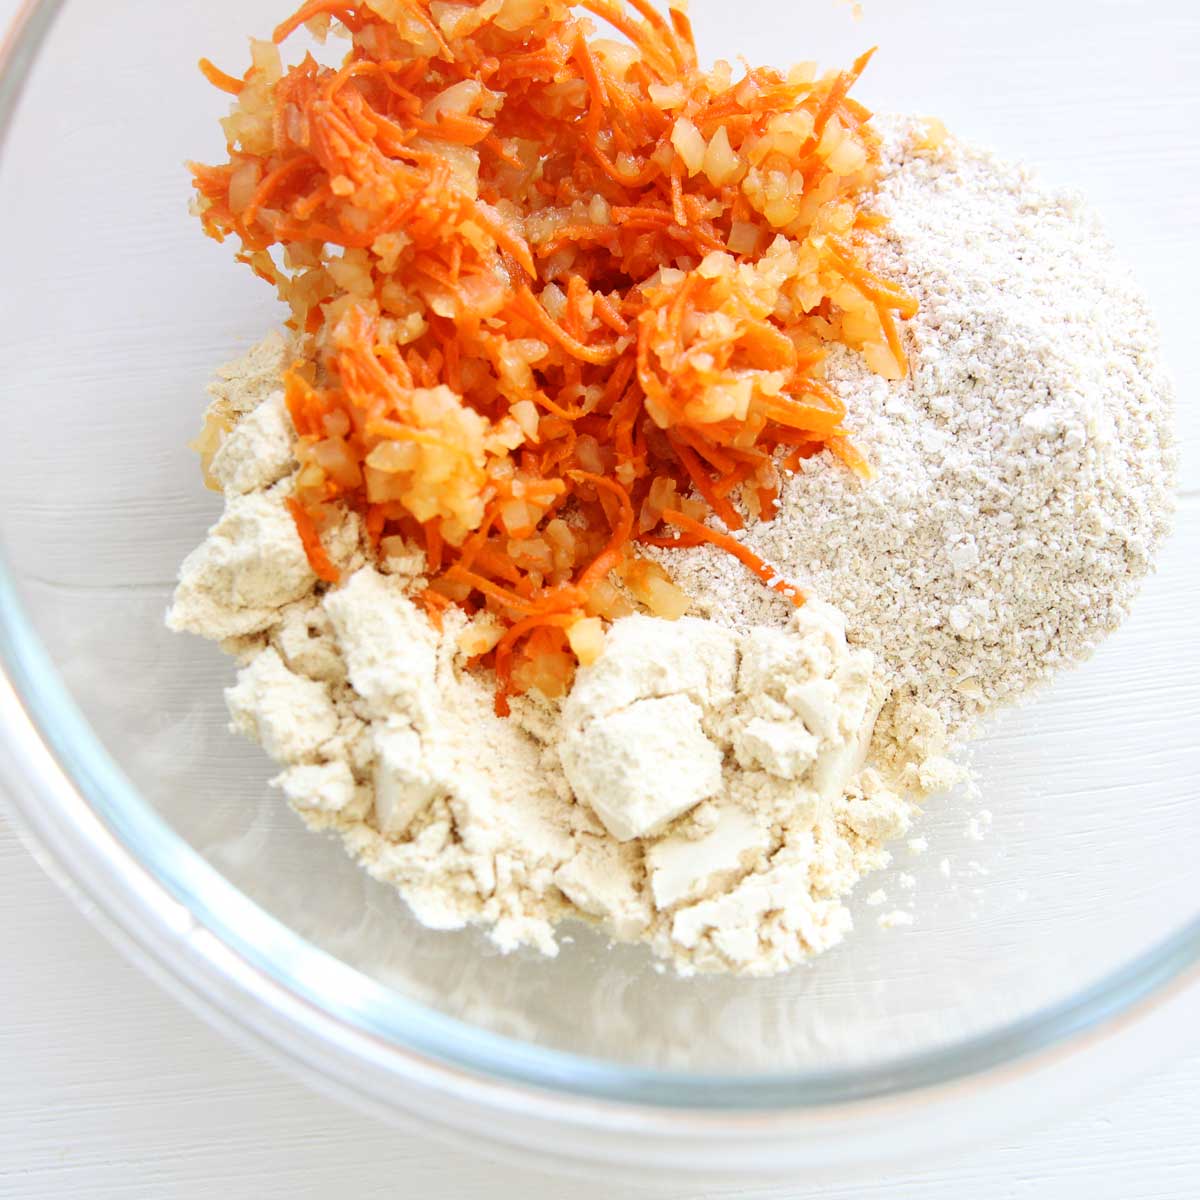 Cauliflower & Carrot Protein Balls - Healthy Energy Bites that Taste like Carrot Cake! - Cauliflower & Carrot Protein Balls